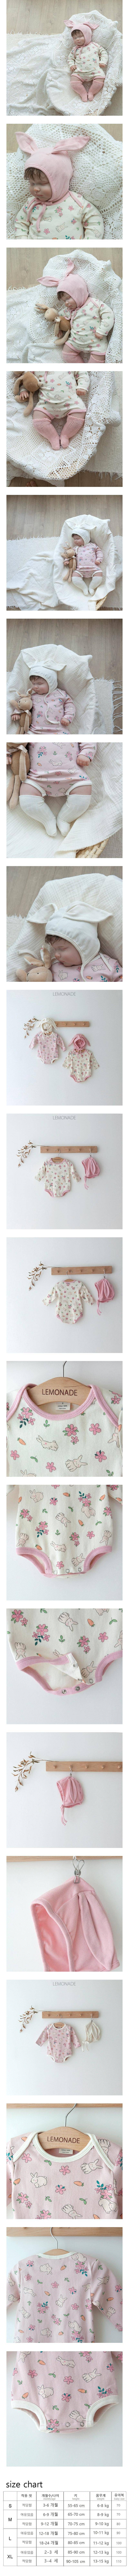 Lemonade - Korean Baby Fashion - #babyboutiqueclothing - Flower Rabbit Body Suit - 2